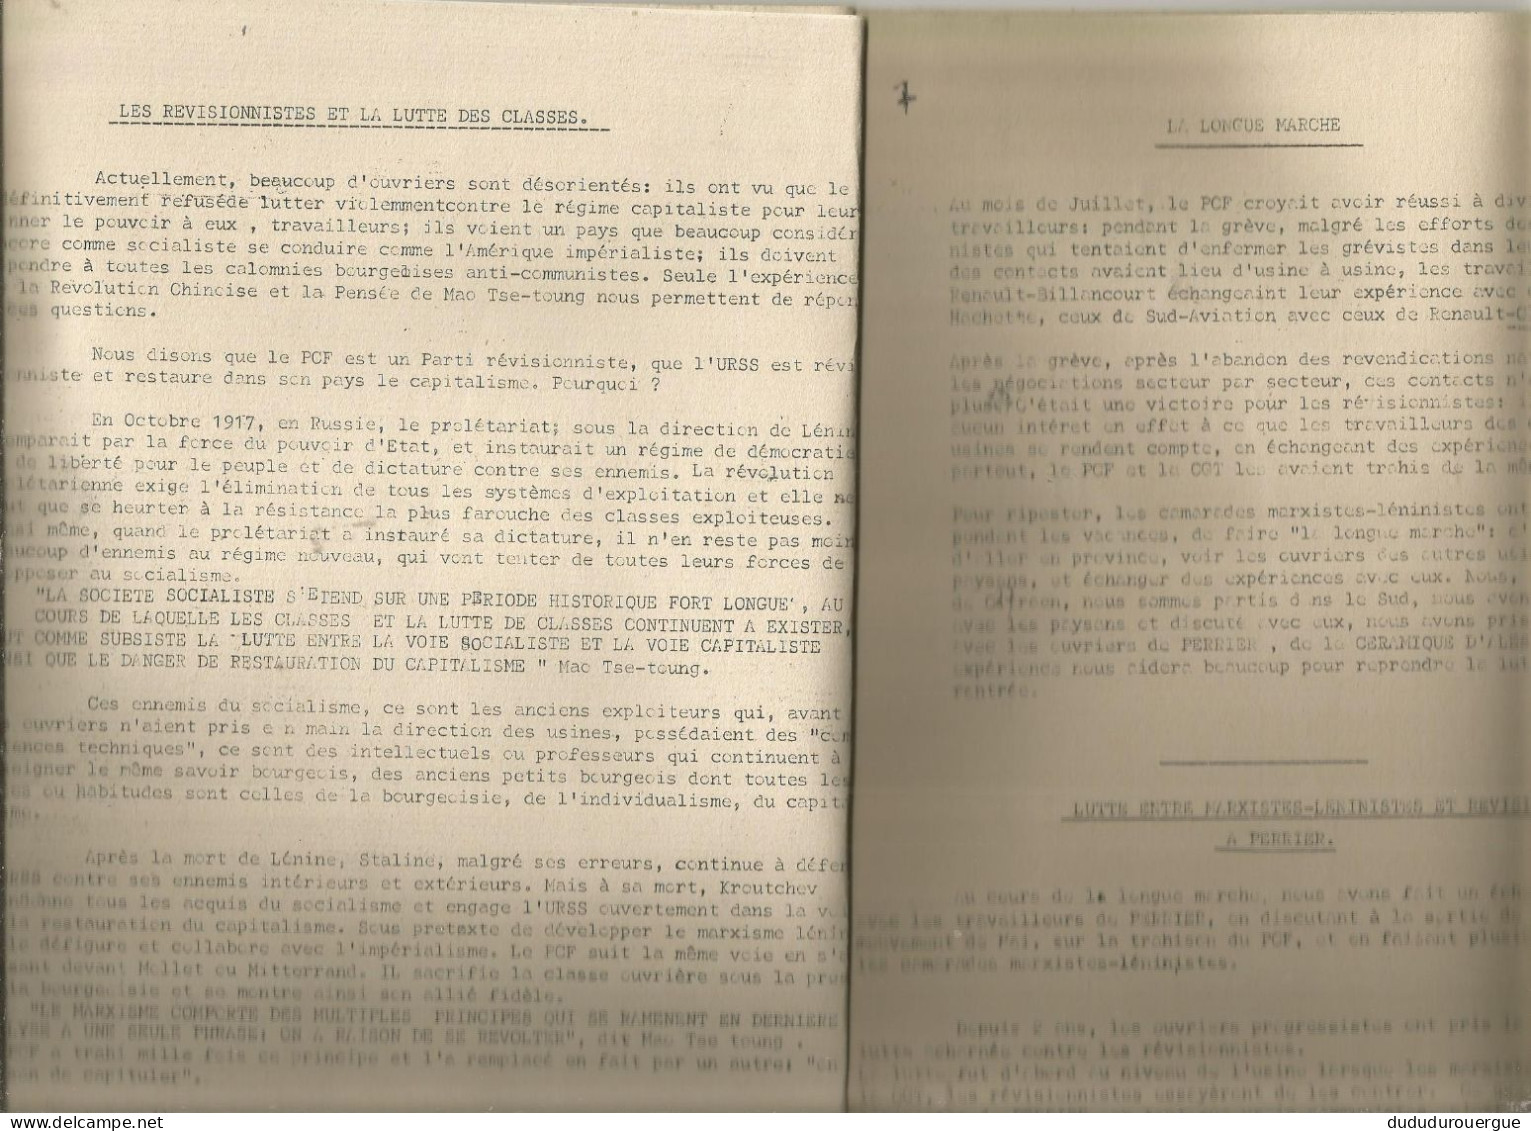 CITROEN ; PROPAGANDE DU GROUPE COMMUNISTE ARME DE LA PENSEE DE MAO - TSE - TOUNG , LE DRAPEAU ROUGE - 1950 - Today